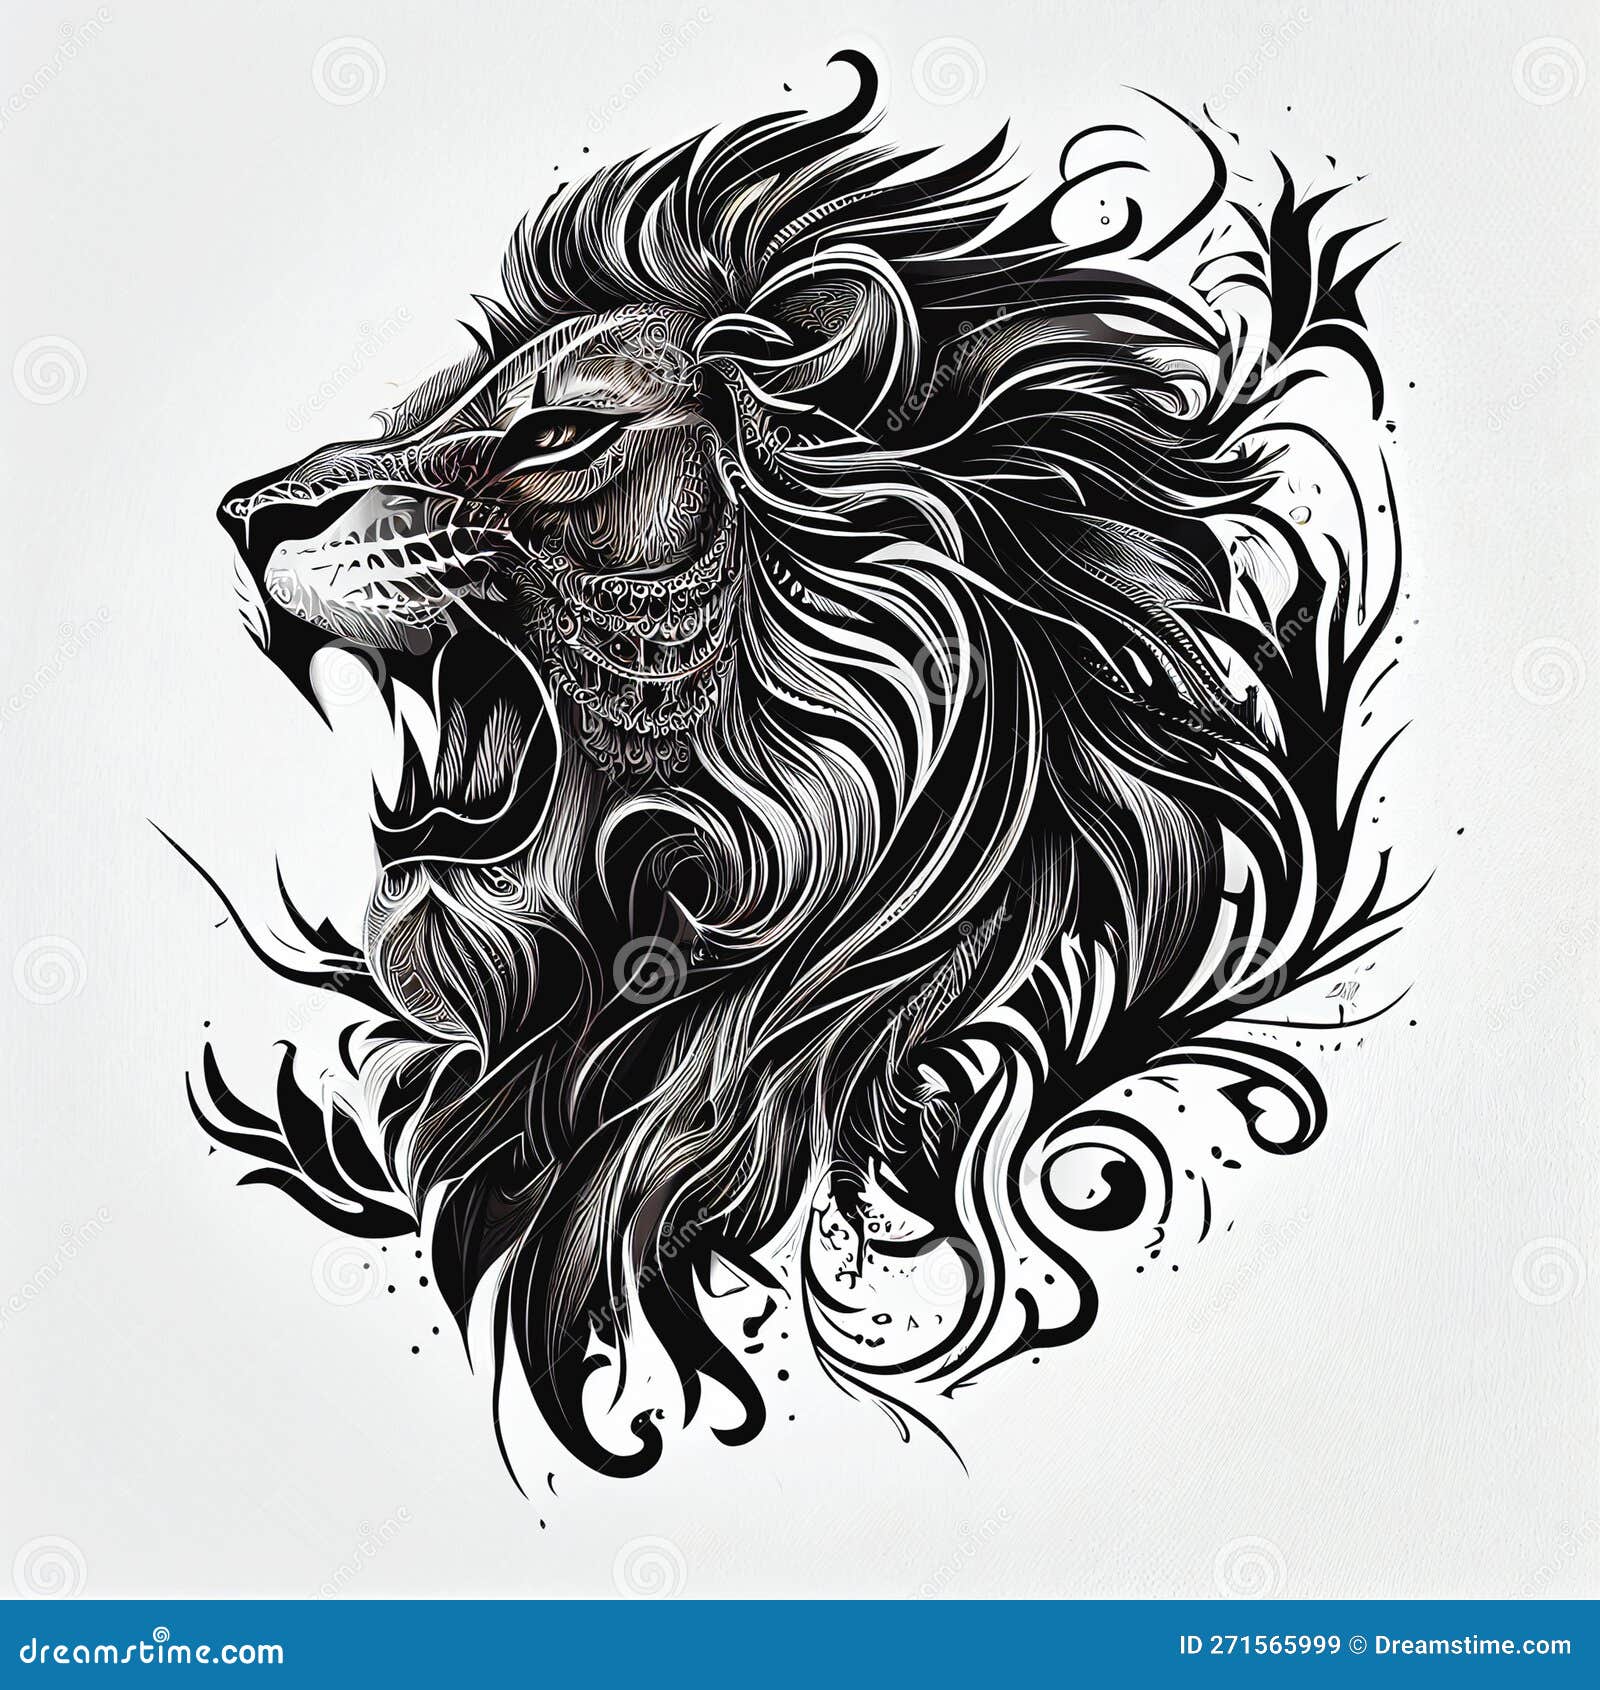 Realistic Roaring Lion Tattoo  Tattooed Now 